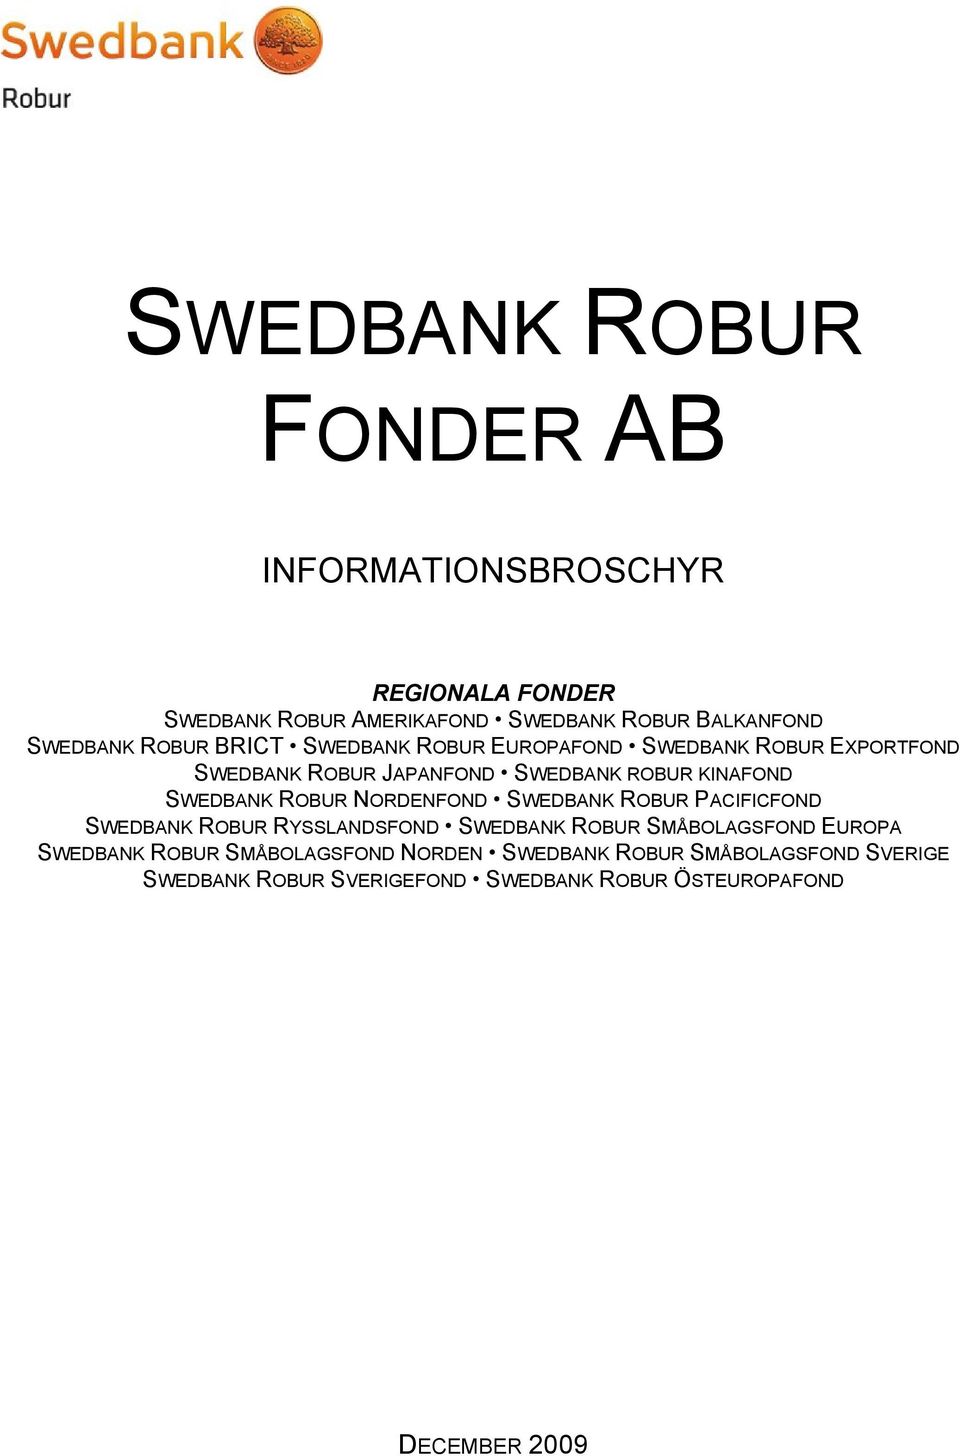 ROBUR NORDENFOND SWEDBANK ROBUR PACIFICFOND SWEDBANK ROBUR RYSSLANDSFOND SWEDBANK ROBUR SMÅBOLAGSFOND EUROPA SWEDBANK ROBUR